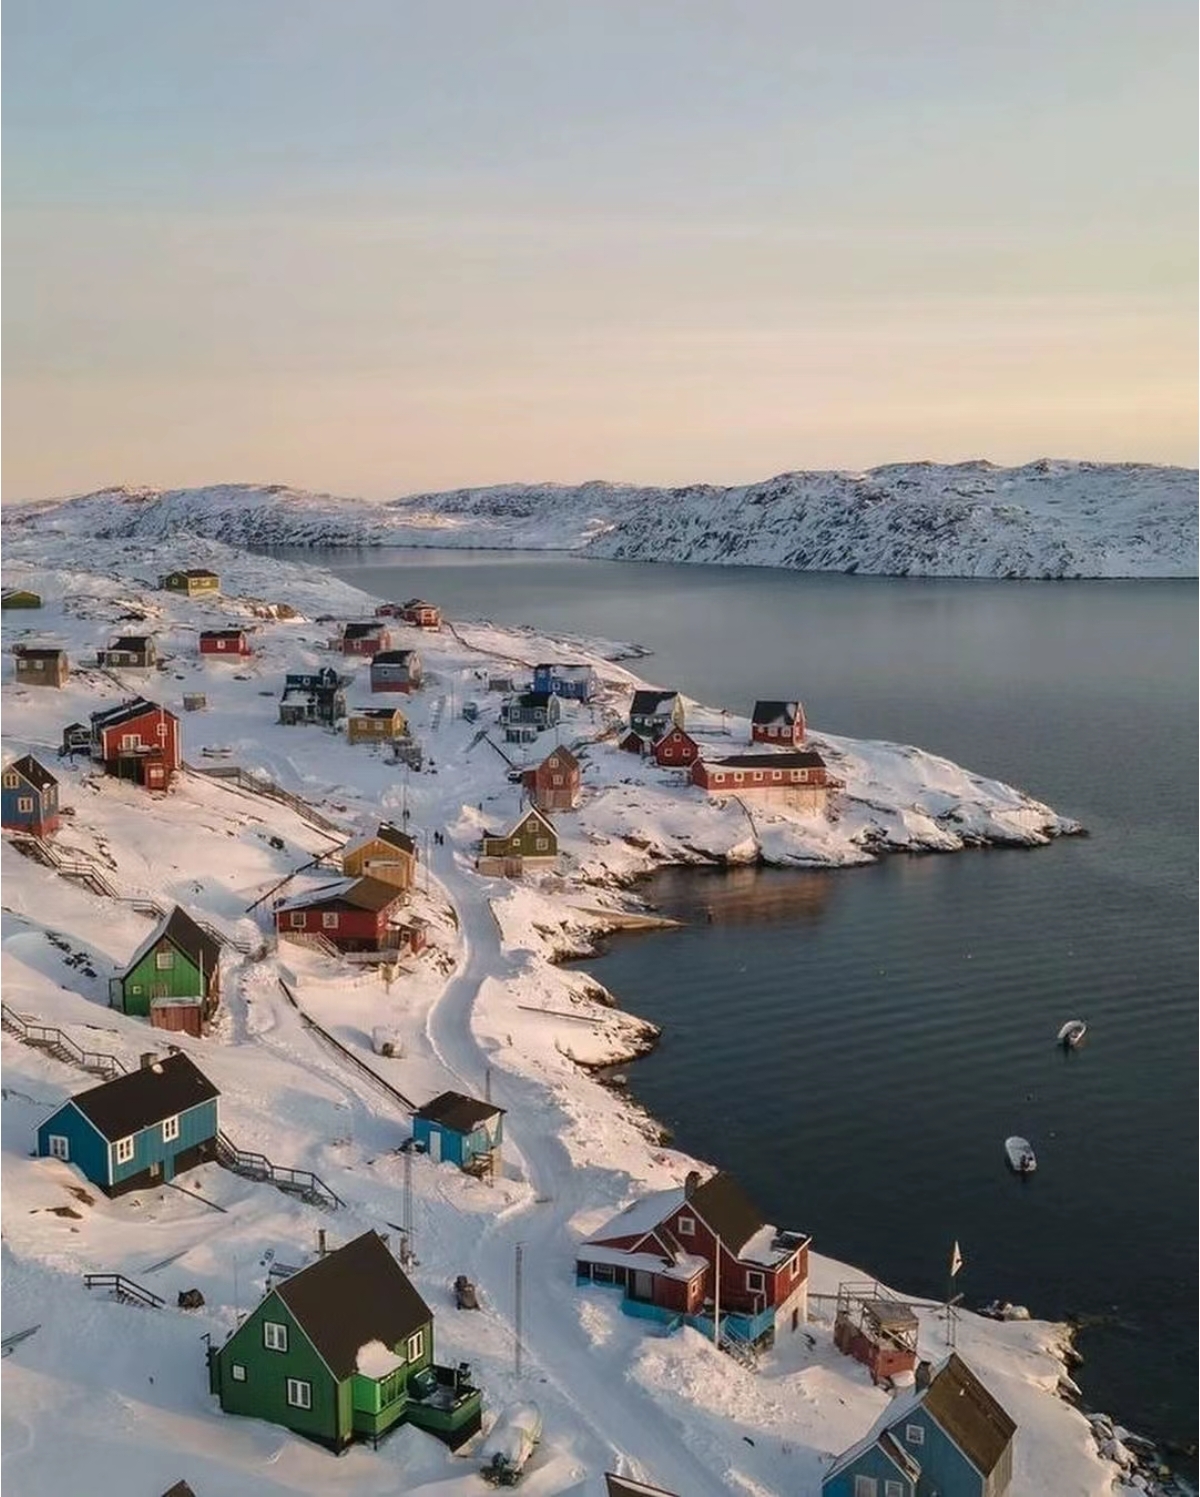 格陵兰岛，位于北极圈附近，是世界上最大的岛屿。这里的自然风光壮美，拥有丰富的野生动物资源，是一个非常